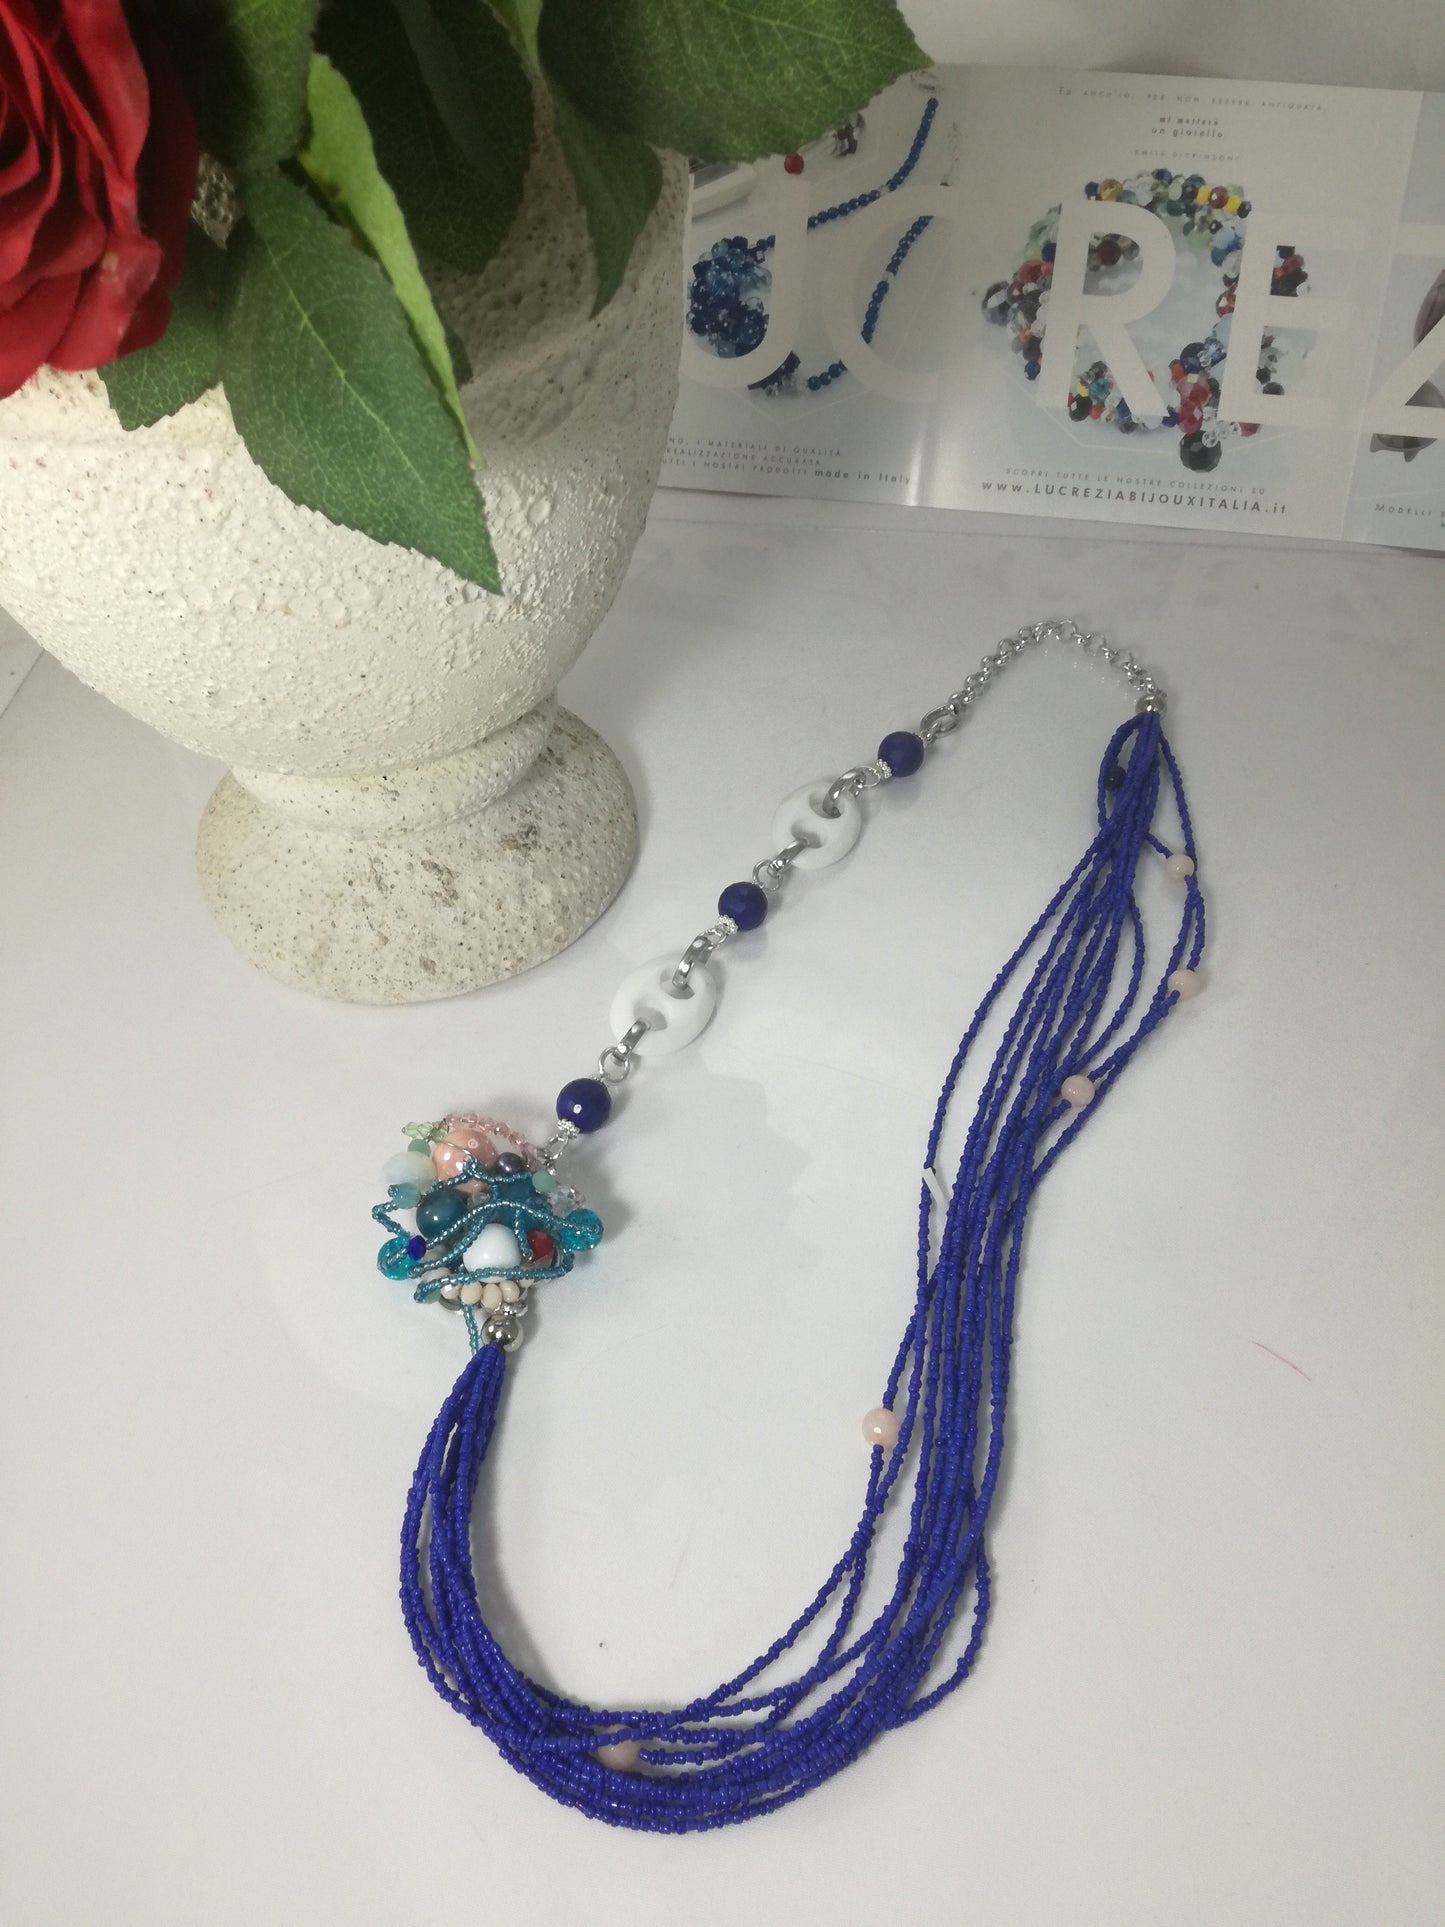 Collana SOPHIA i colori .015 , dieci fili perline blu cobalto, agata, perle lapislazzulo e centrale elaborato,.